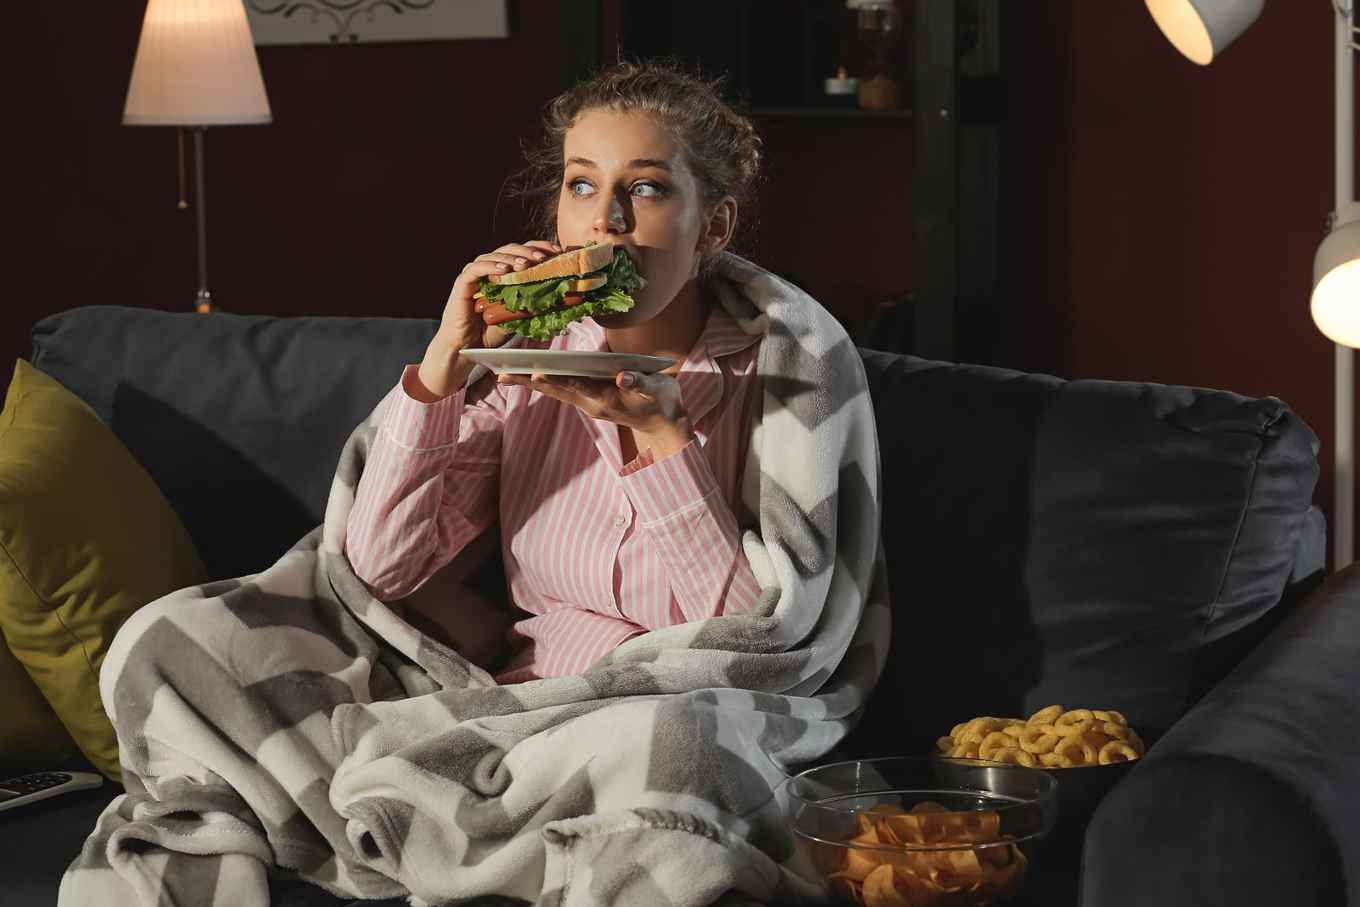 Jonge vrouw eet tijdens het televisiekijken